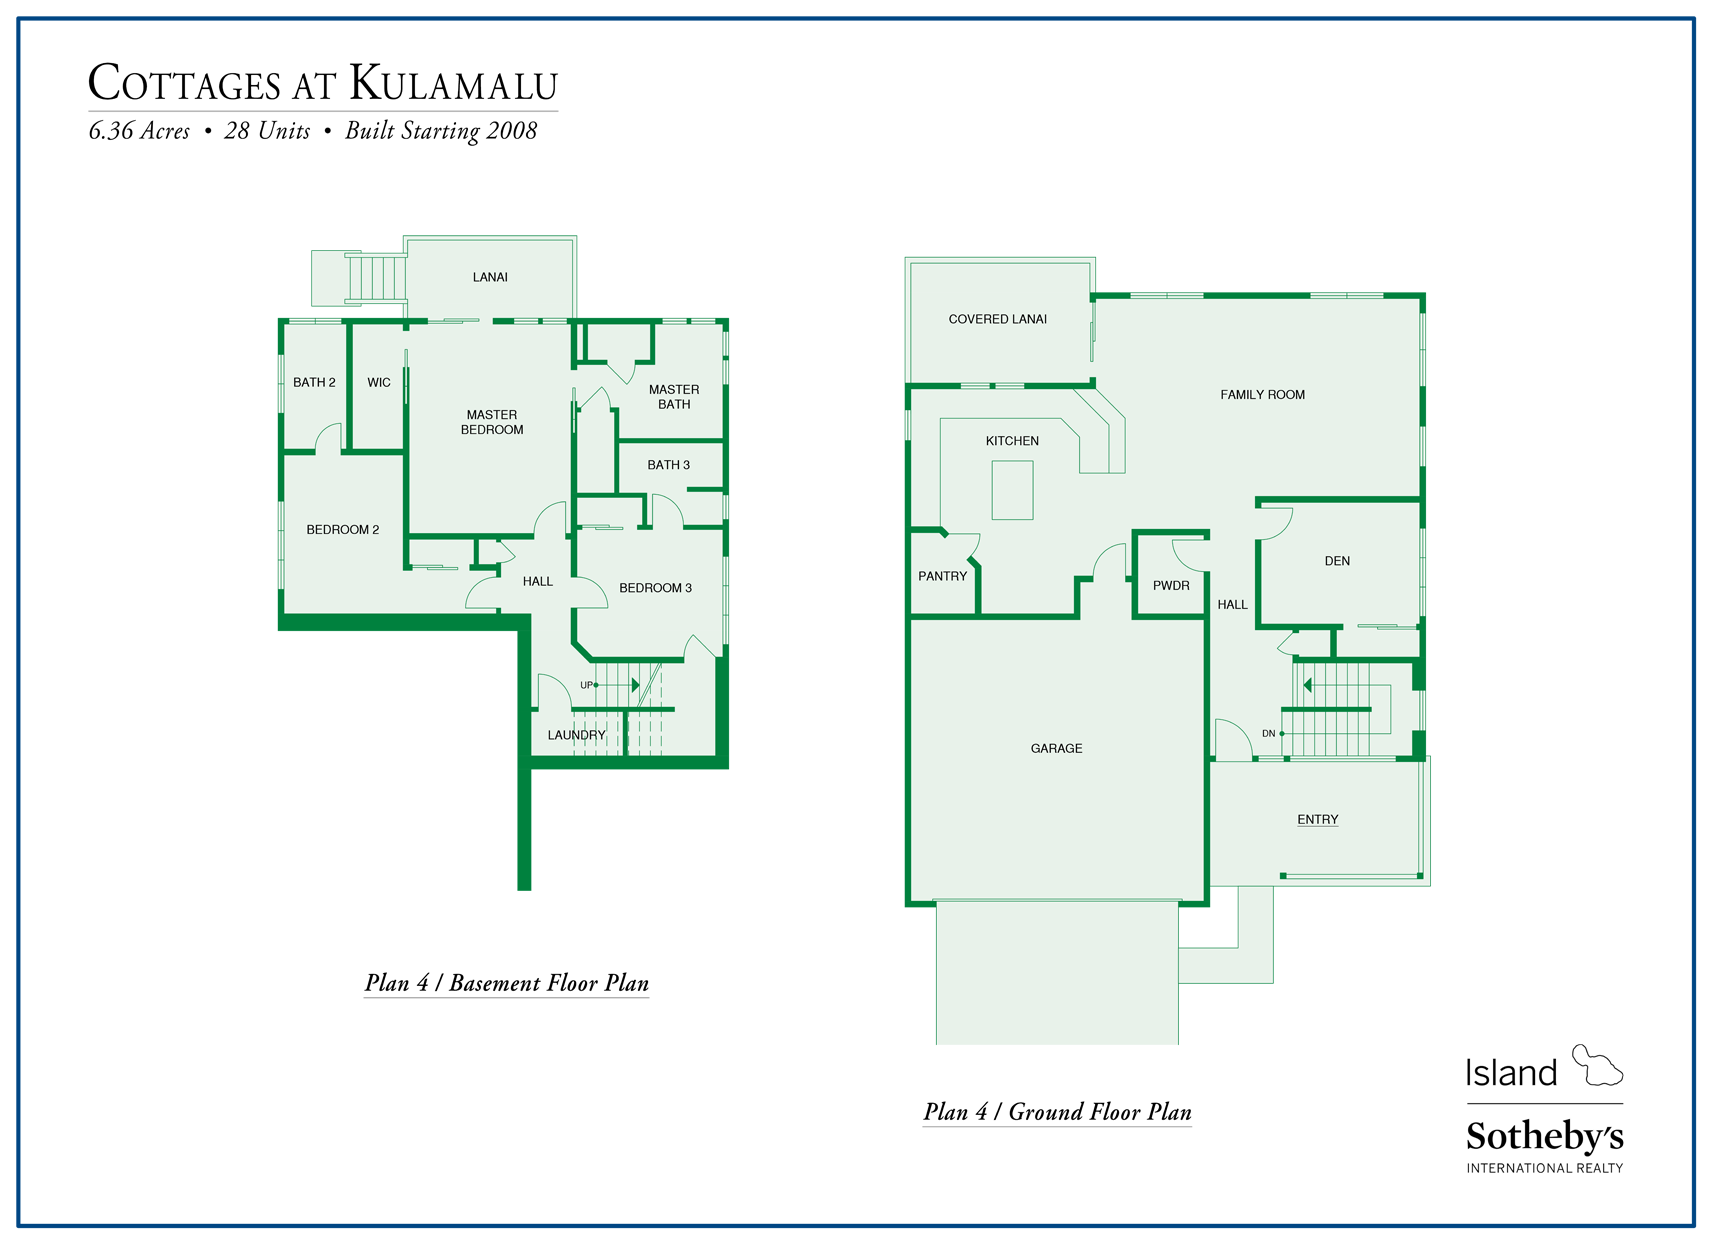 cottages at kulamalu floor plan 4